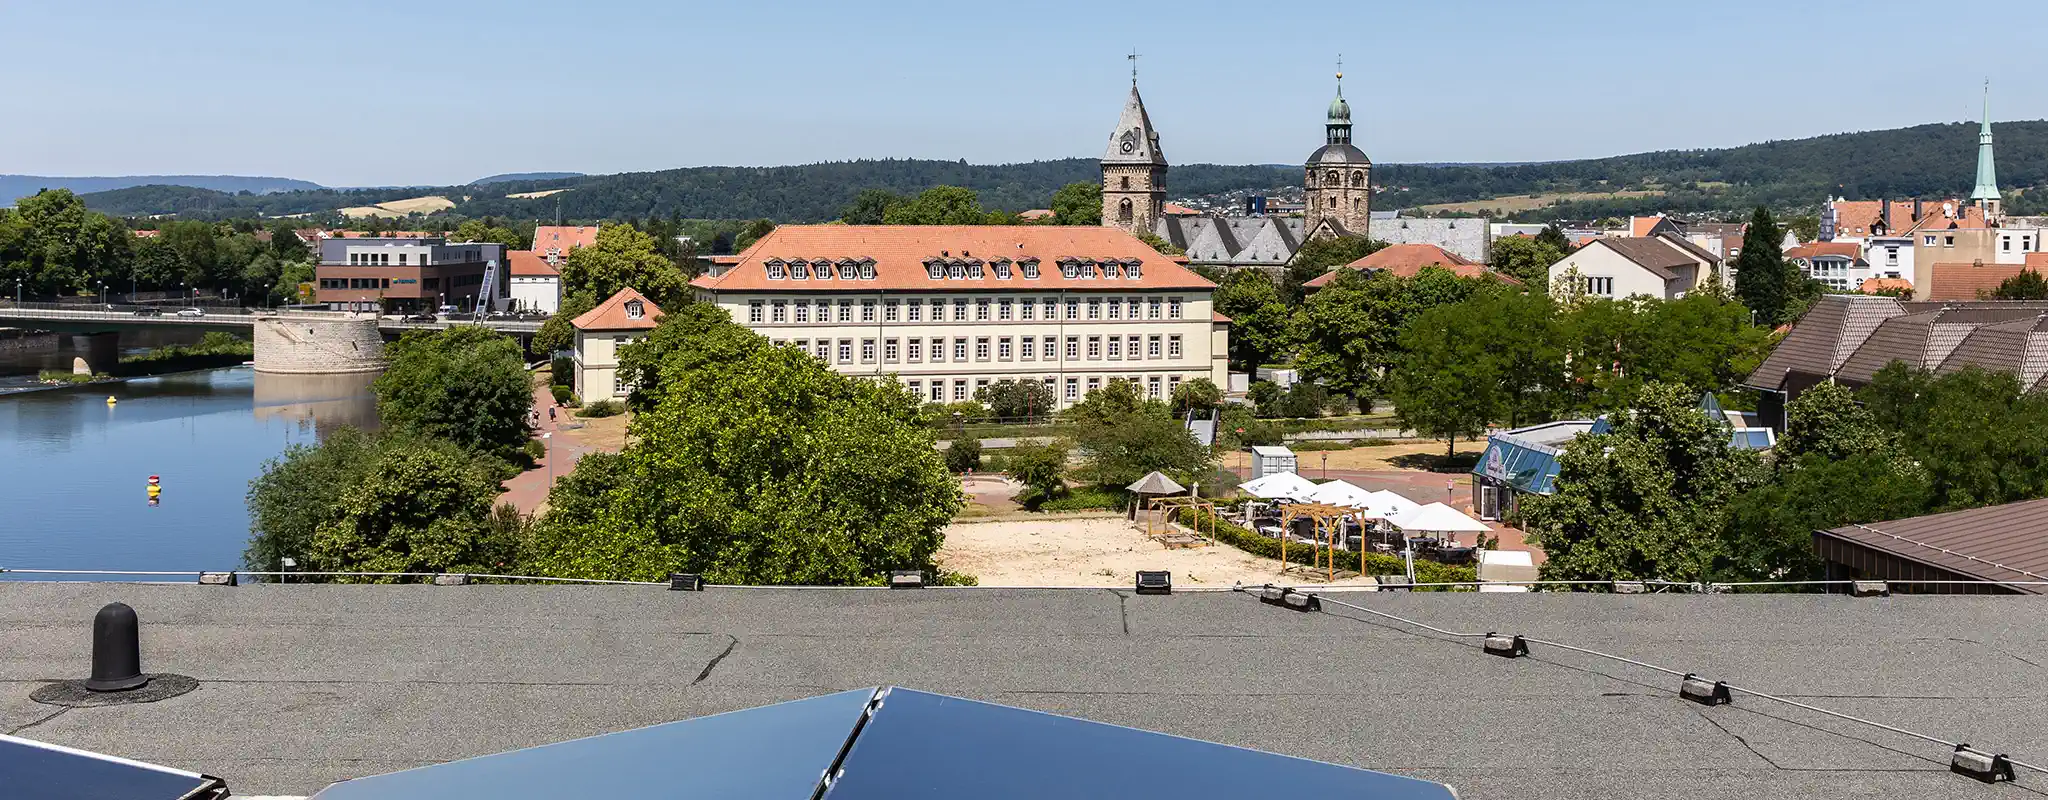 Aussicht vom Dach der Hochschule Weserbergland Richtung Innenstadt Hameln